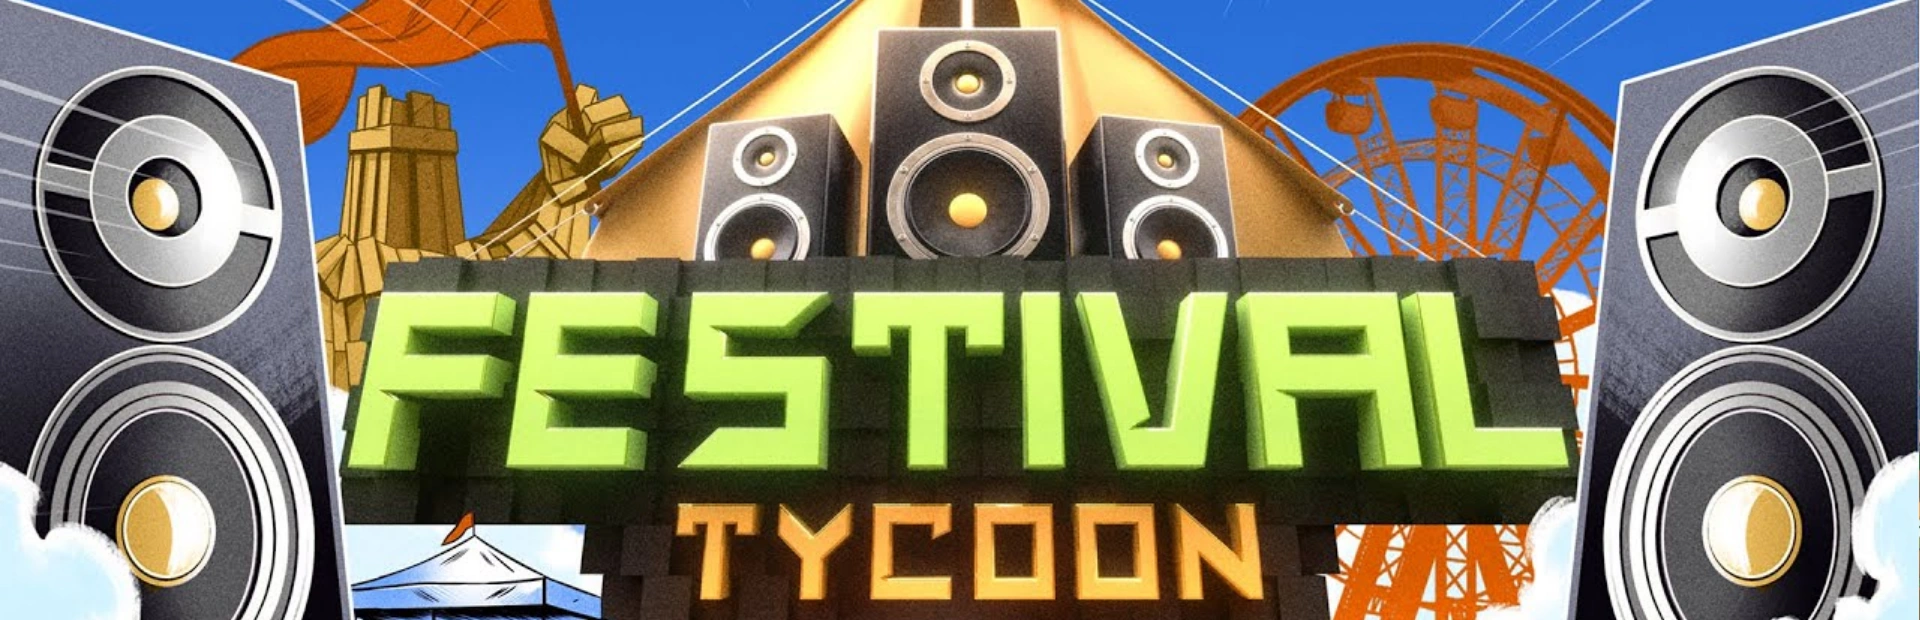 دانلود بازی Festival Tycoon برای کامپیوتر | گیمباتو